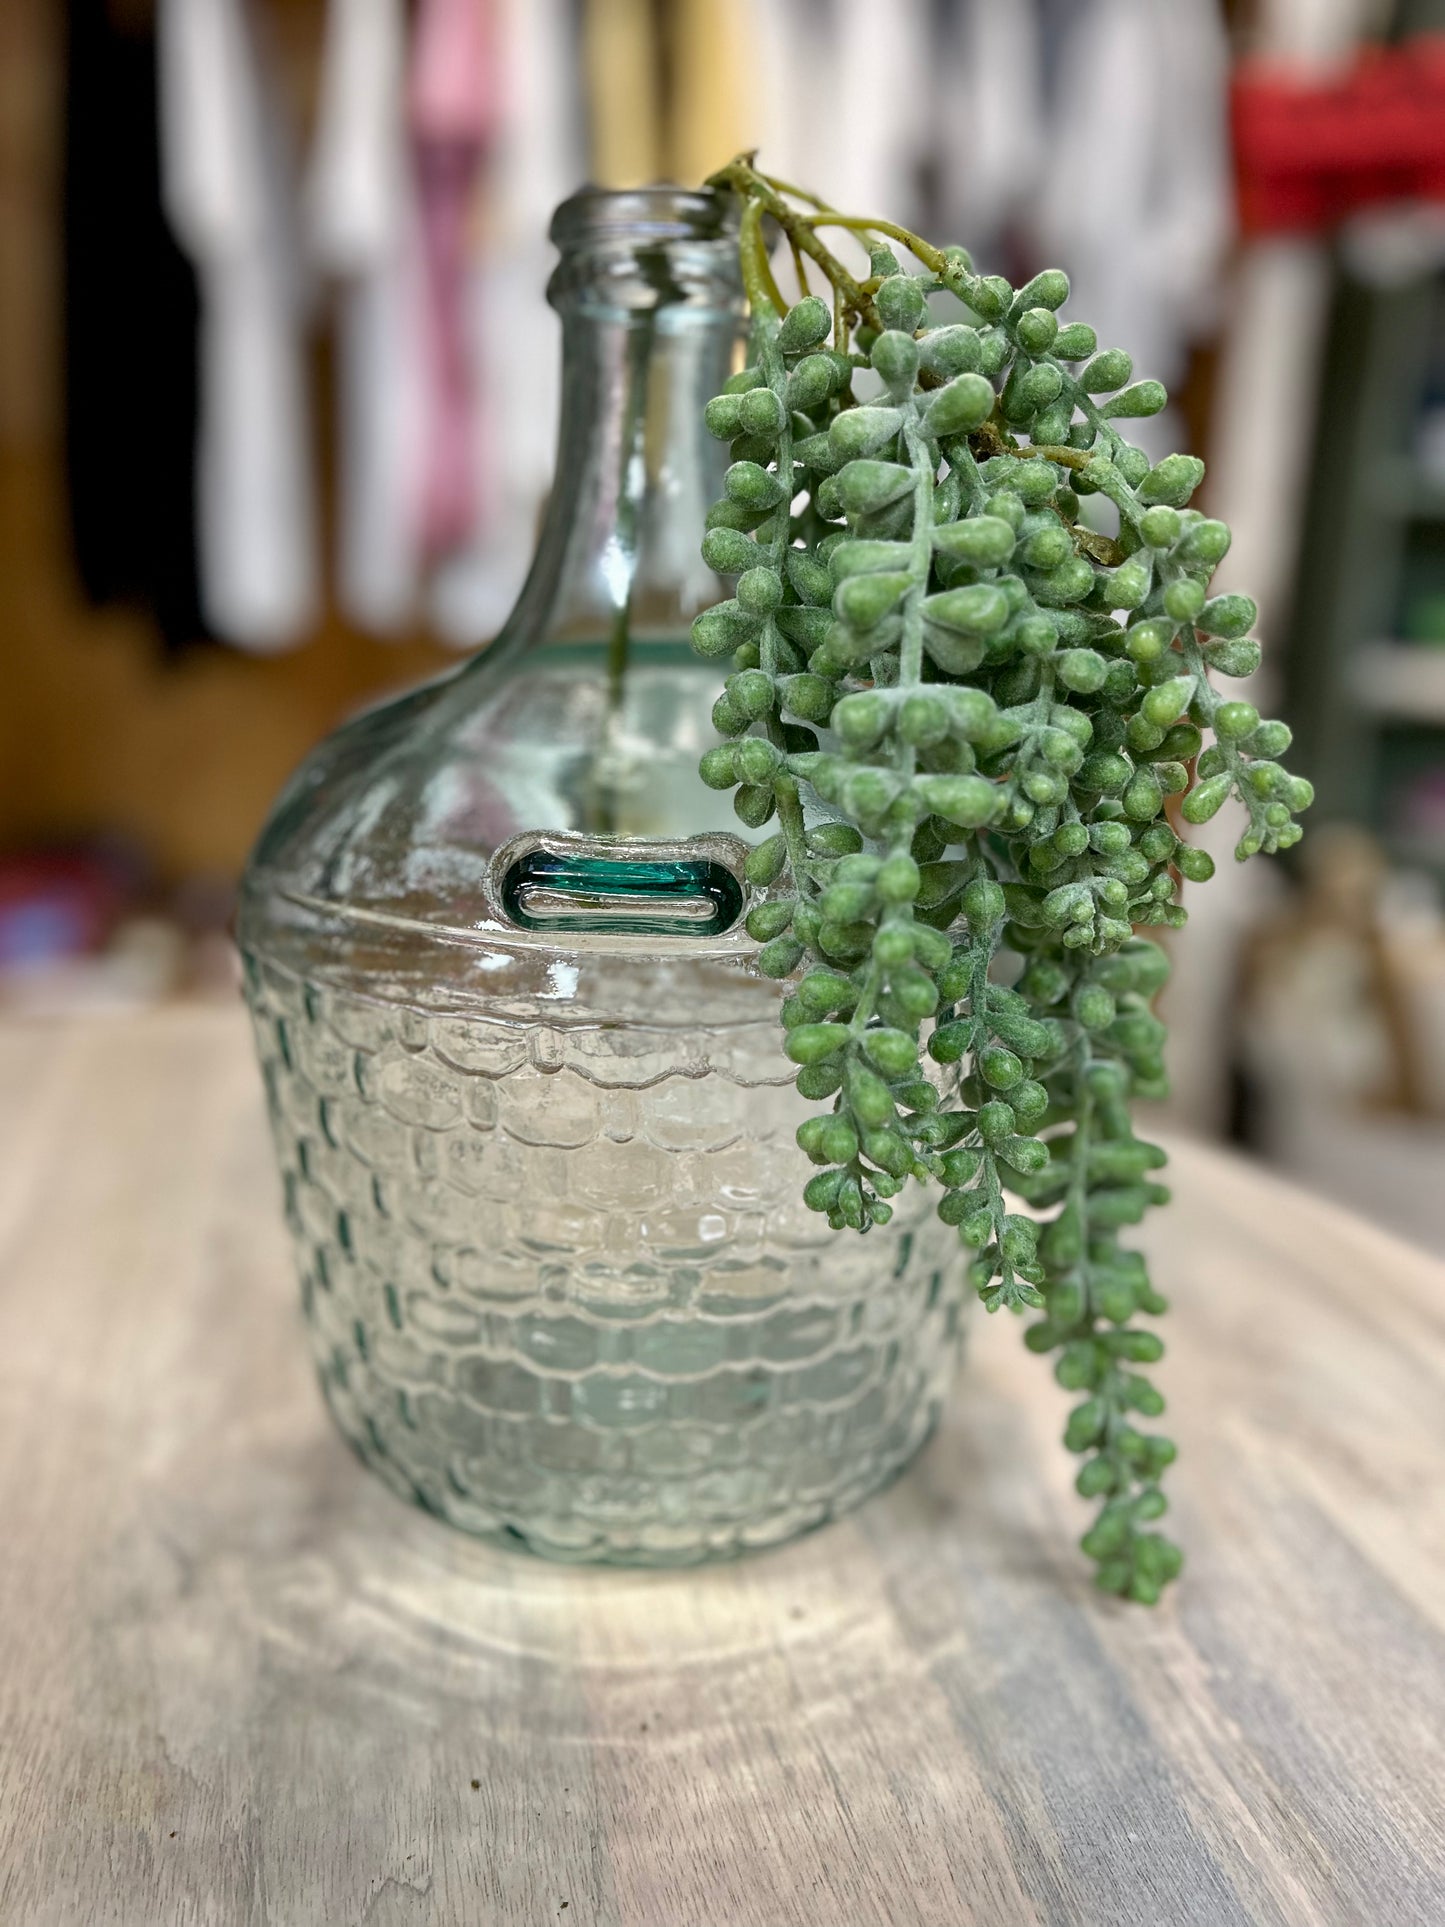 Vintage Glass Cellar Bottle